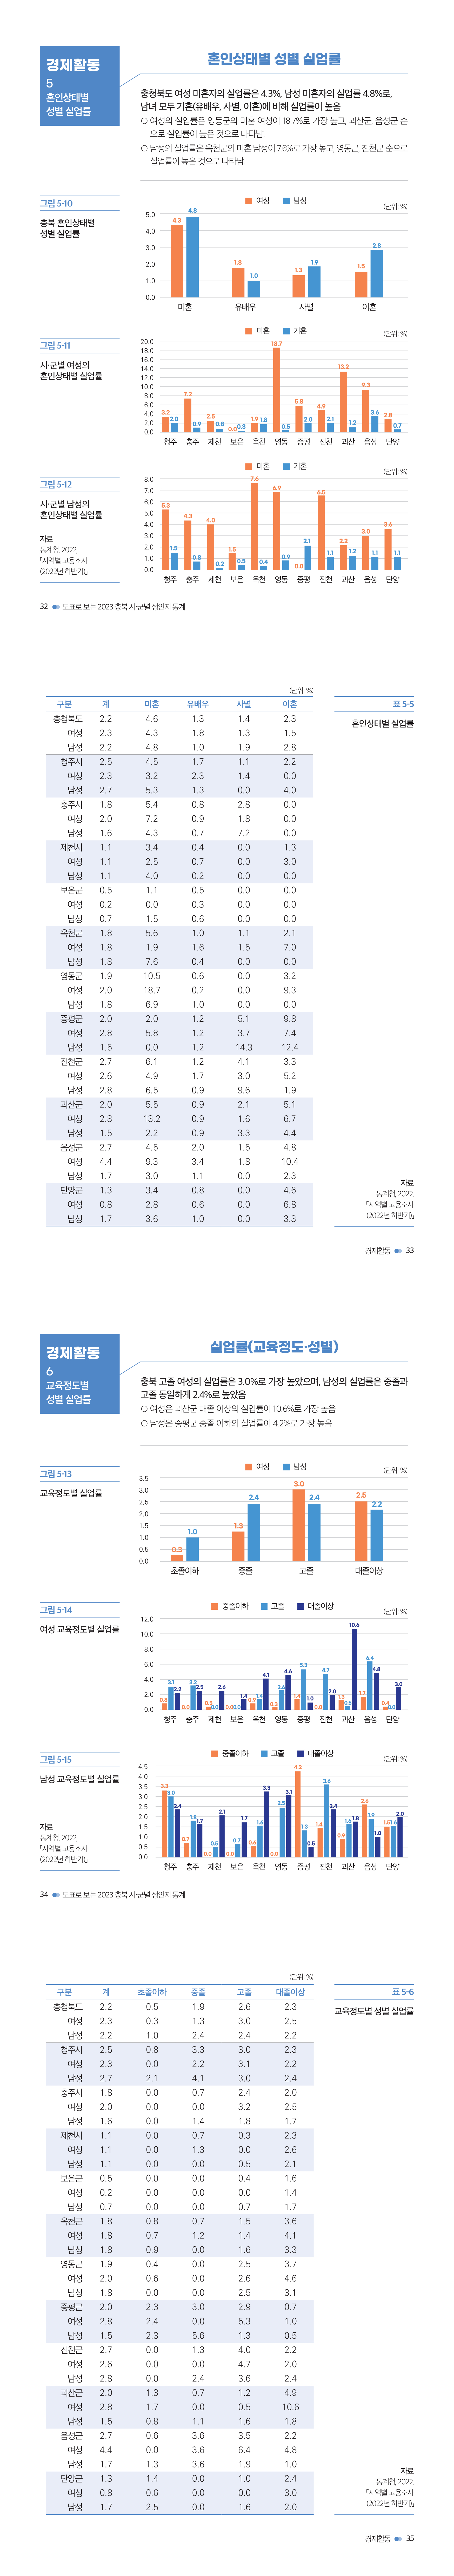 충북여성재단-성인지통계(인포)_웹용_경제3.jpg